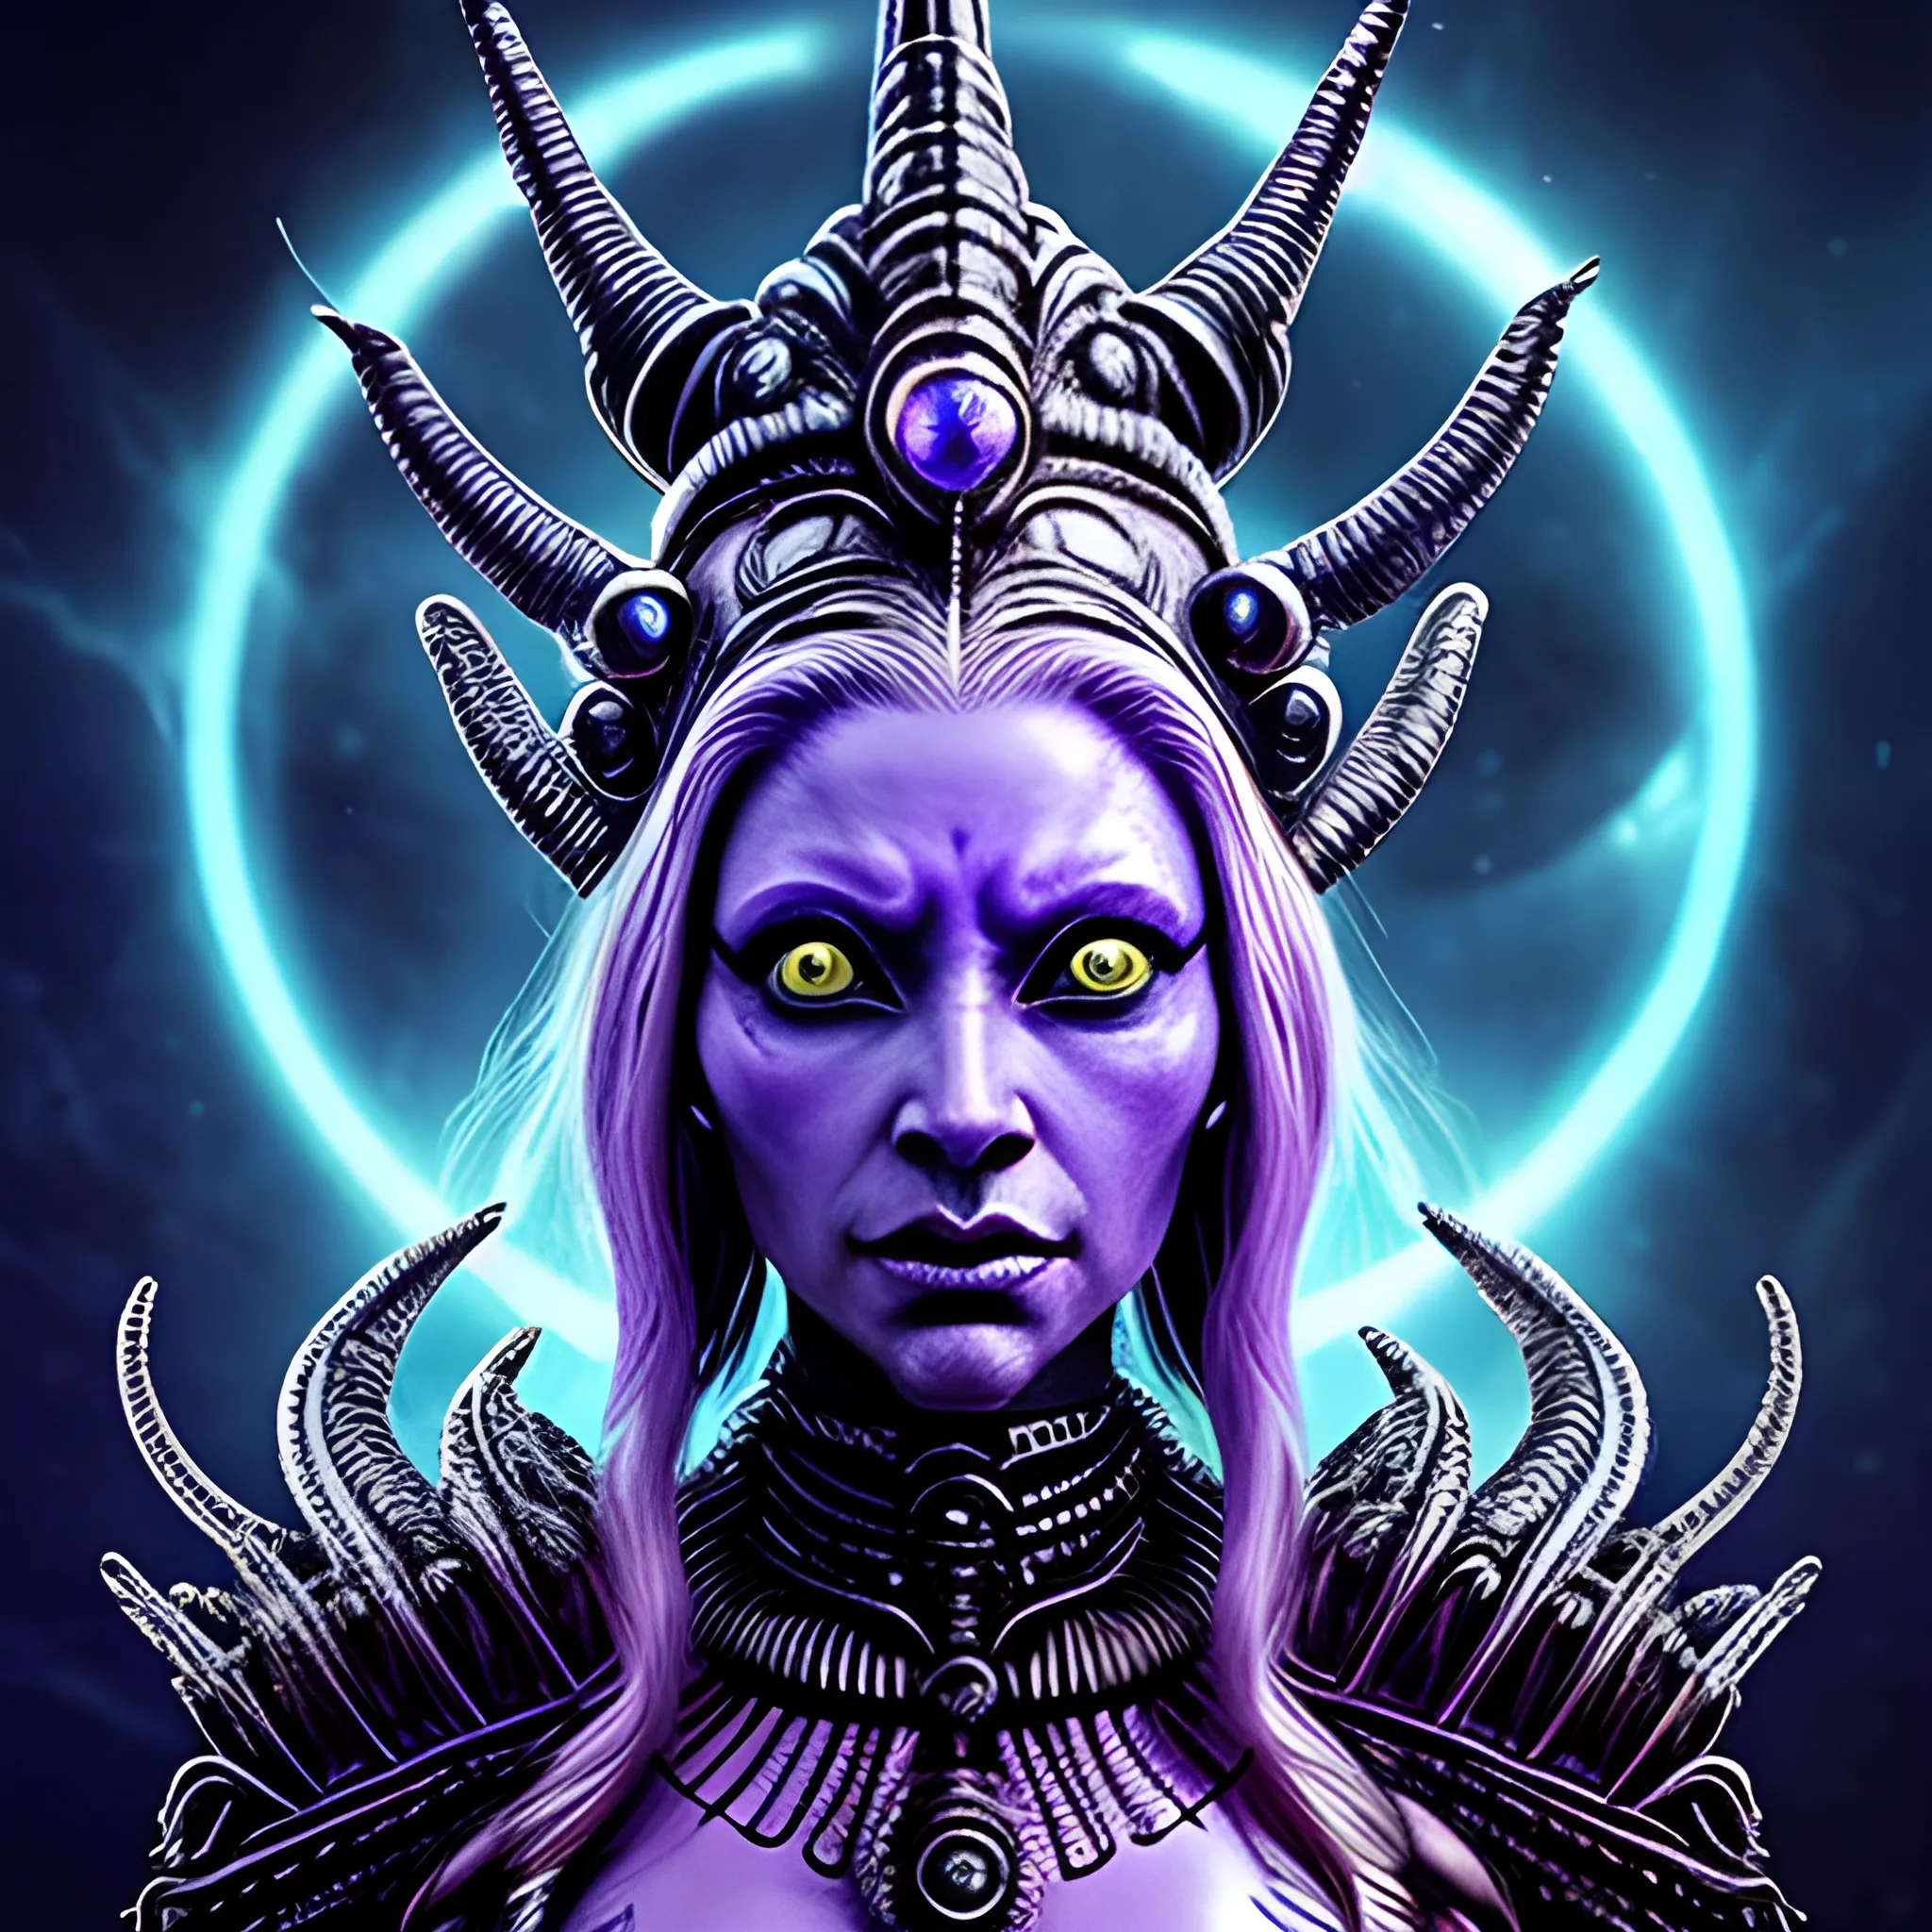 Alien queen goddess intense ruler powerful creature beautiful